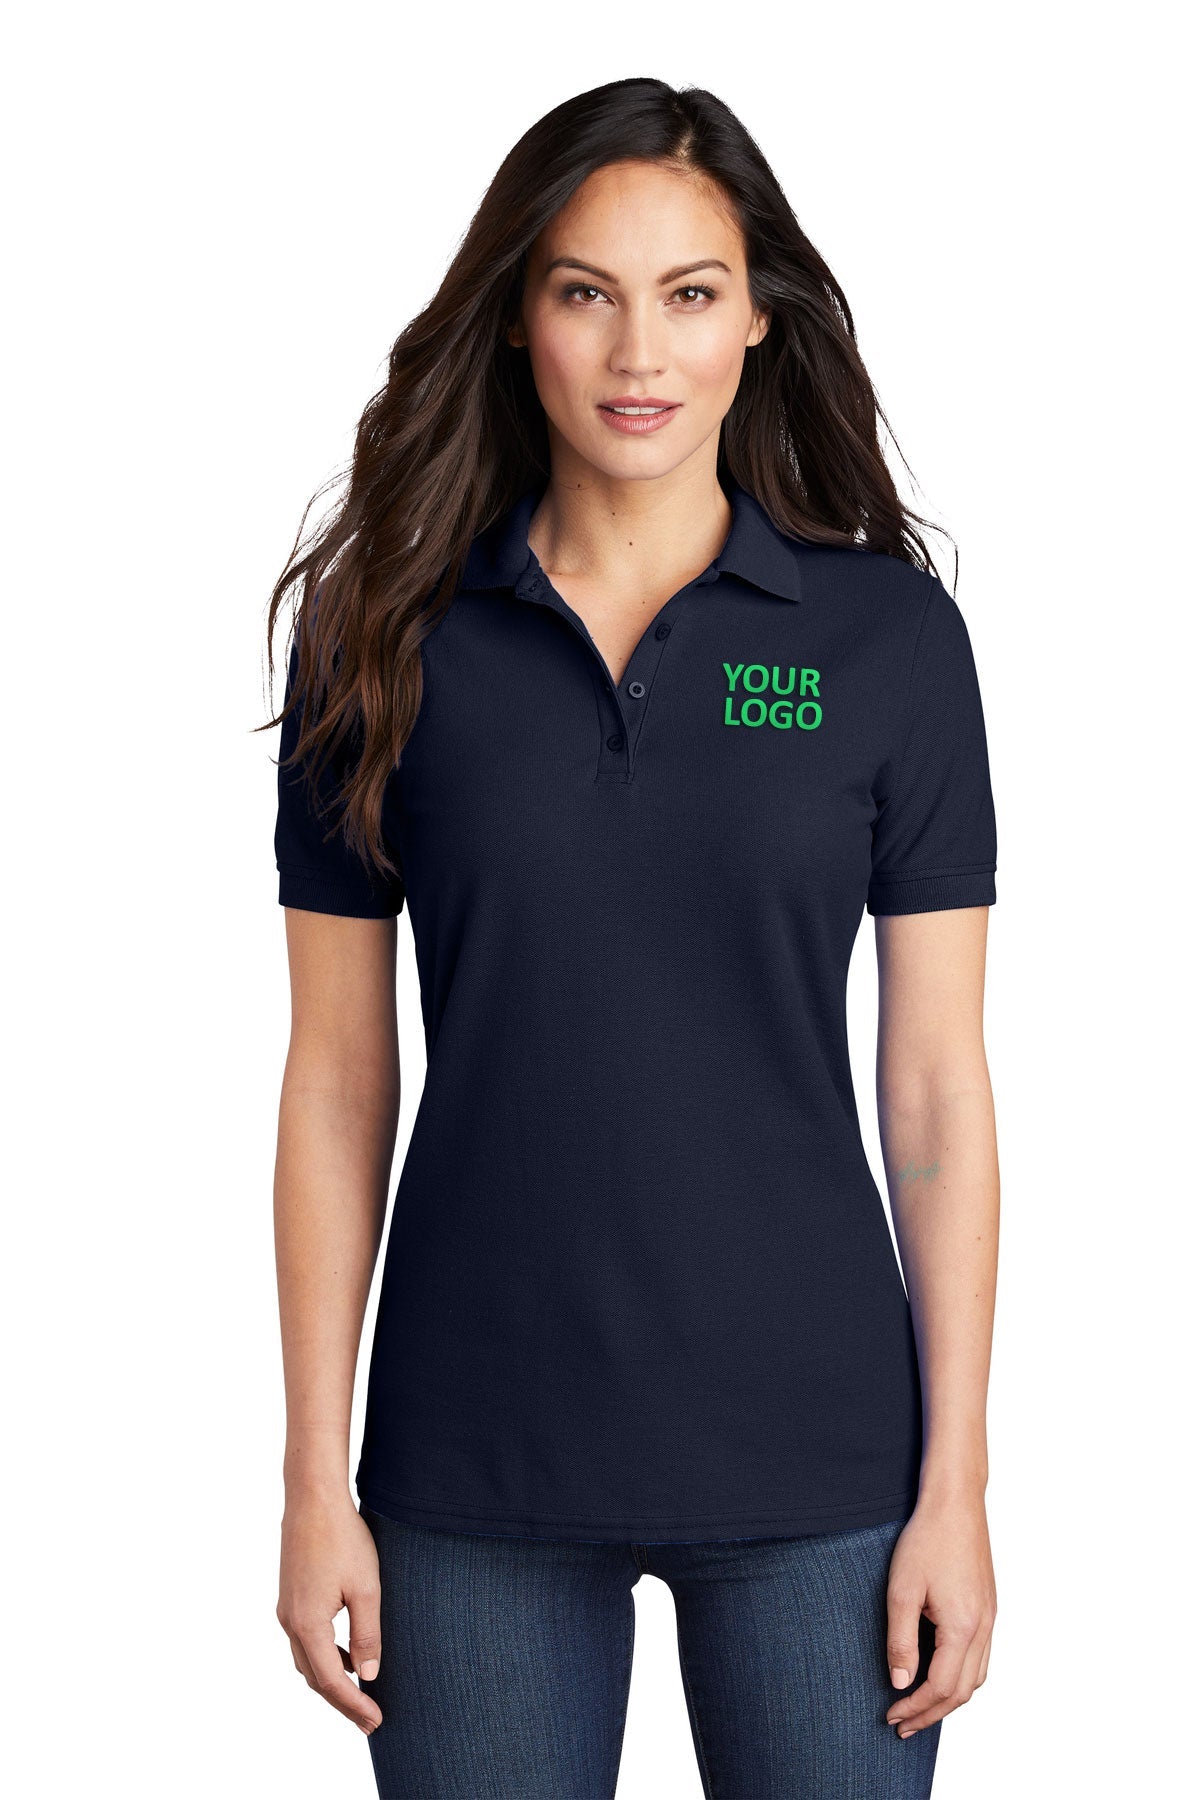 port & company deep navy lkp155 custom polo shirts with logo